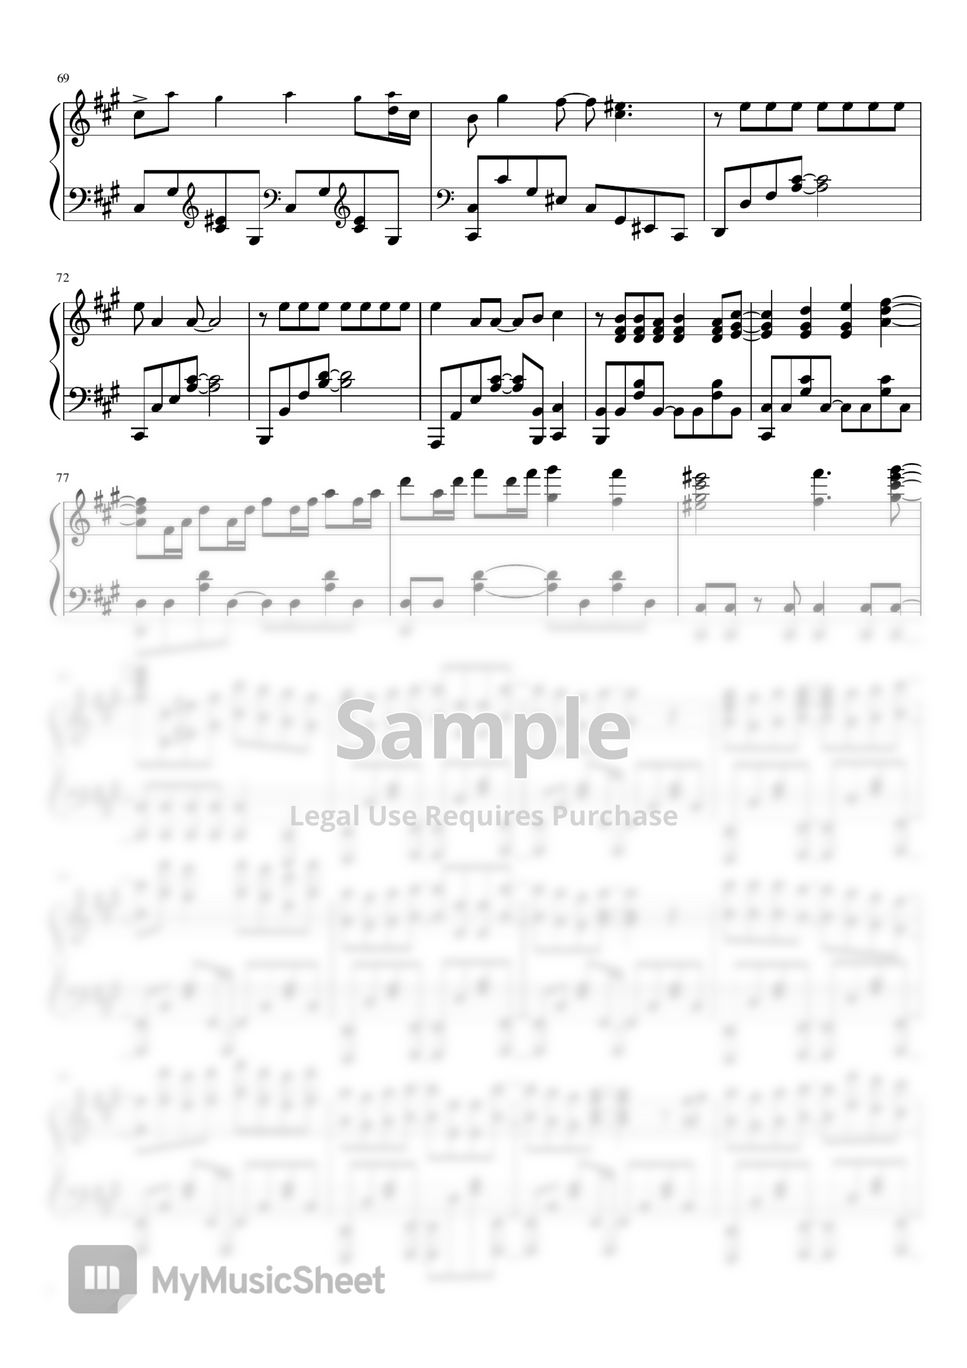 Hikaru Nara: D E C#M F#M F#M, PDF, Song Structure